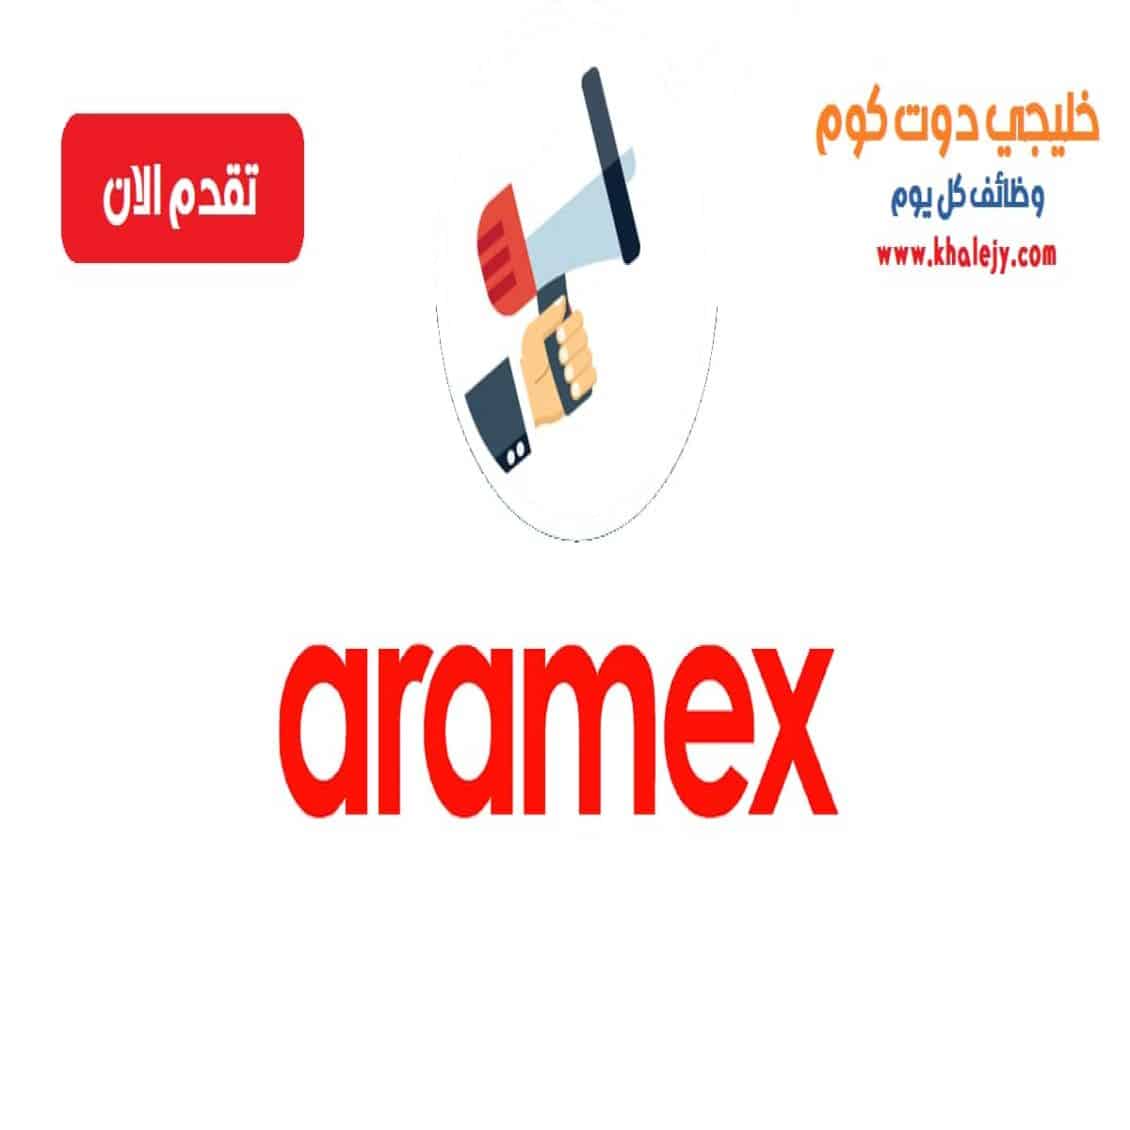 وظائف ارامكس في قطر لجميع الجنسيات